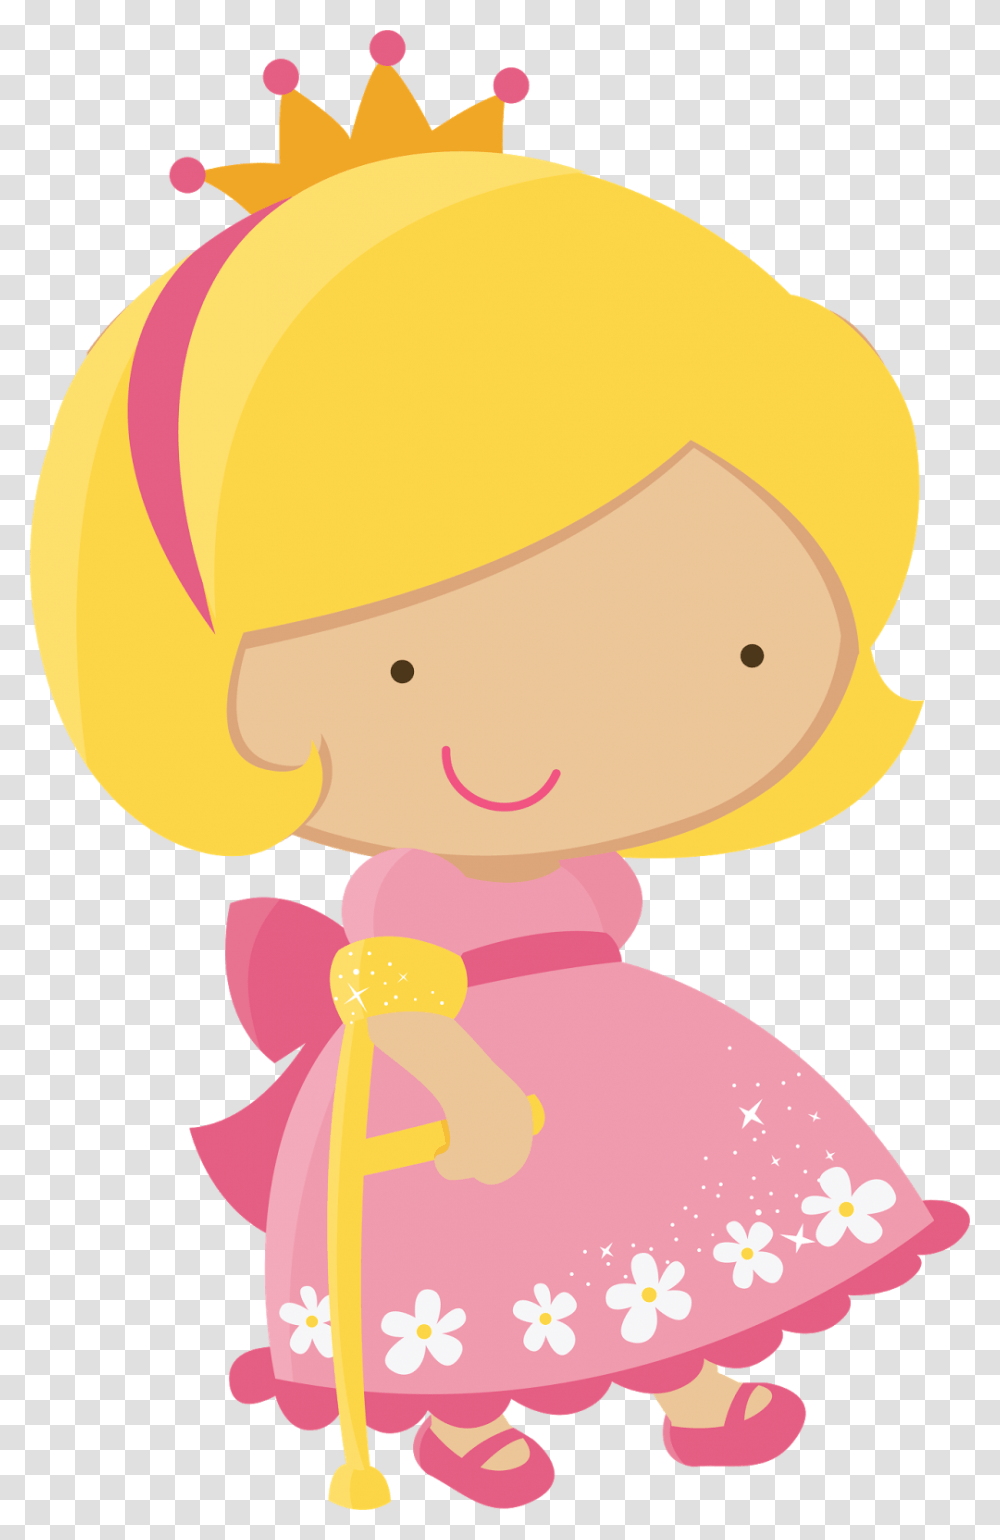 Resultado De Imagem Para Pequeno Principe Princesa Do Pequeno Principe, Doll, Toy, Helmet Transparent Png